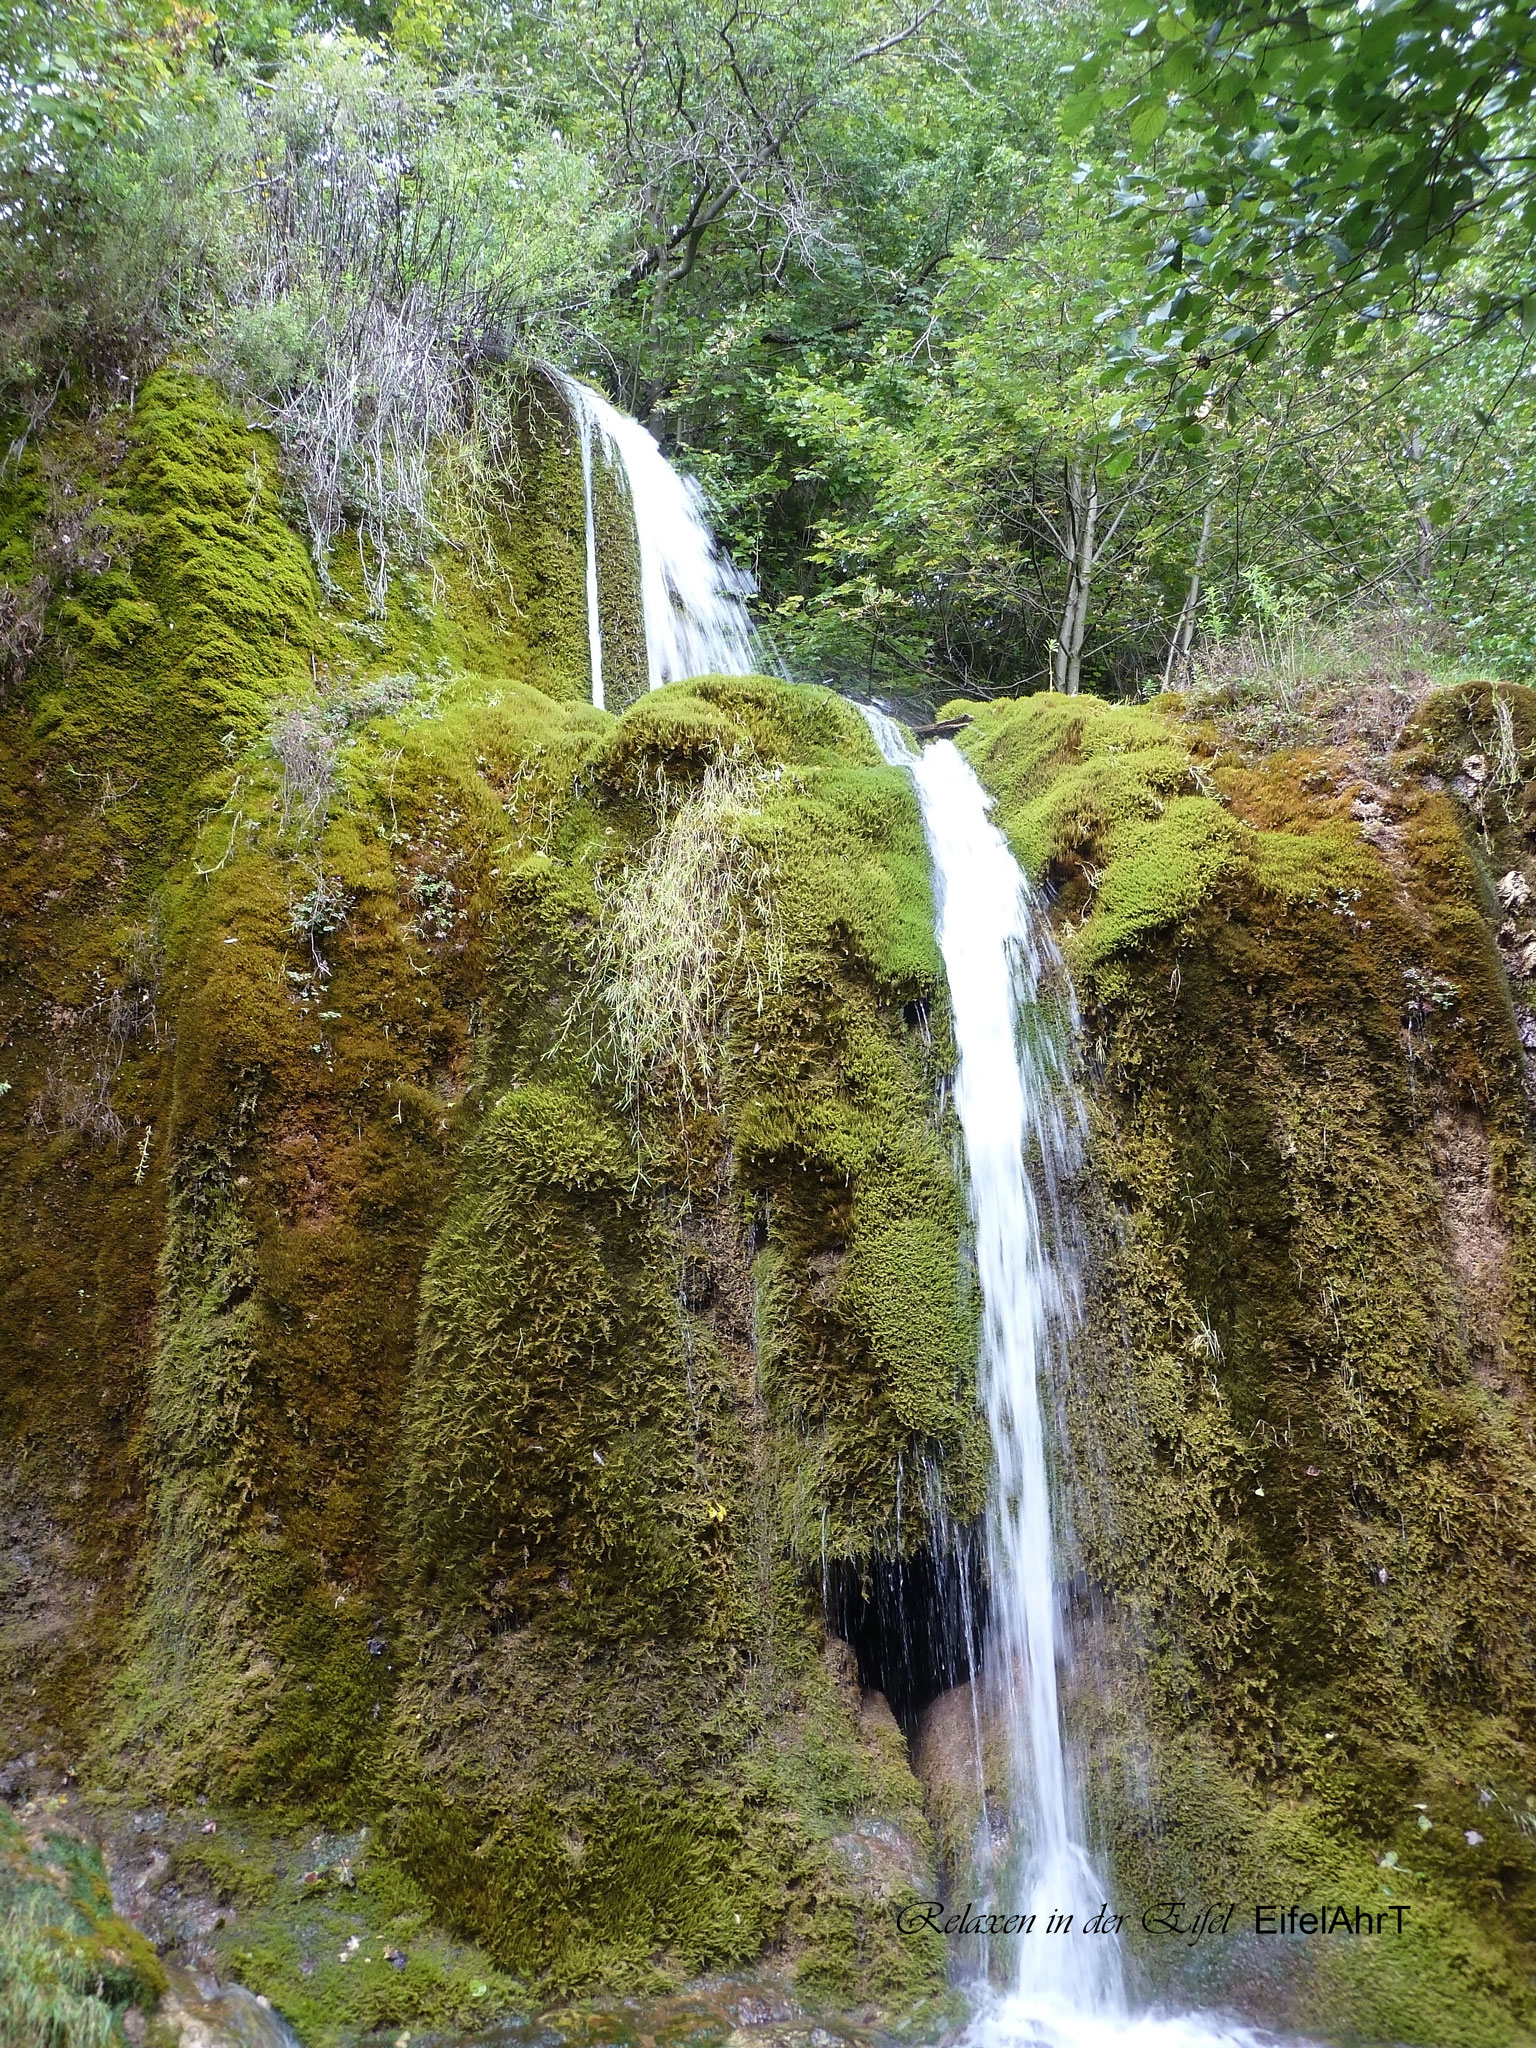 Wasserfälle sind in der Eifel eher selten